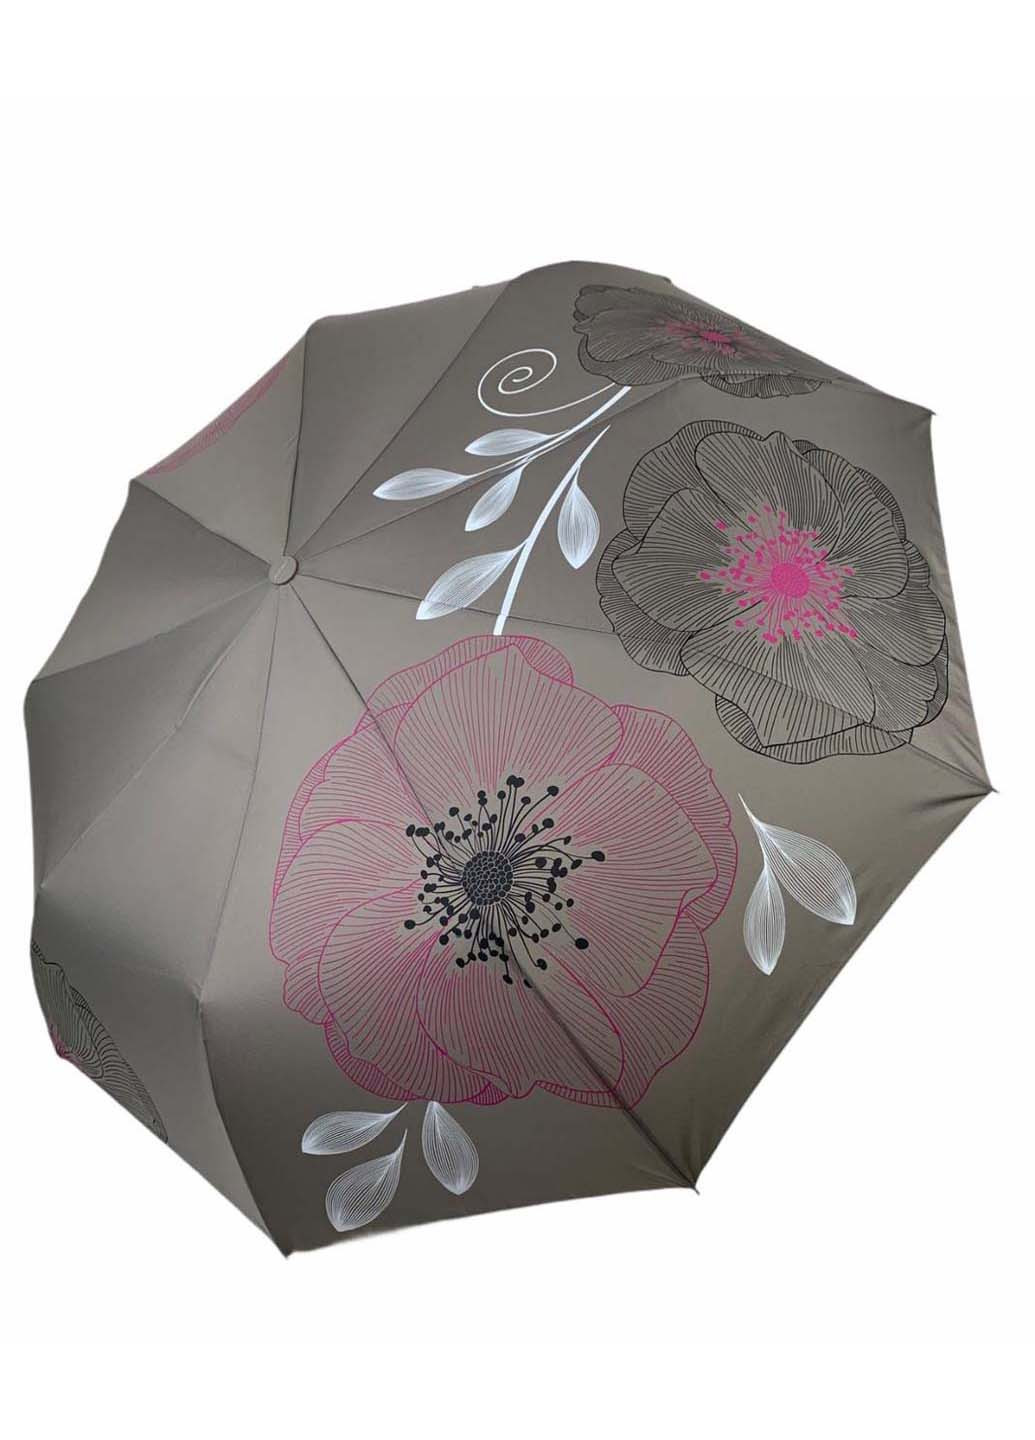 Жіночий складний парасолька-напівавтомат з принтом квітів Flagman складний сіра